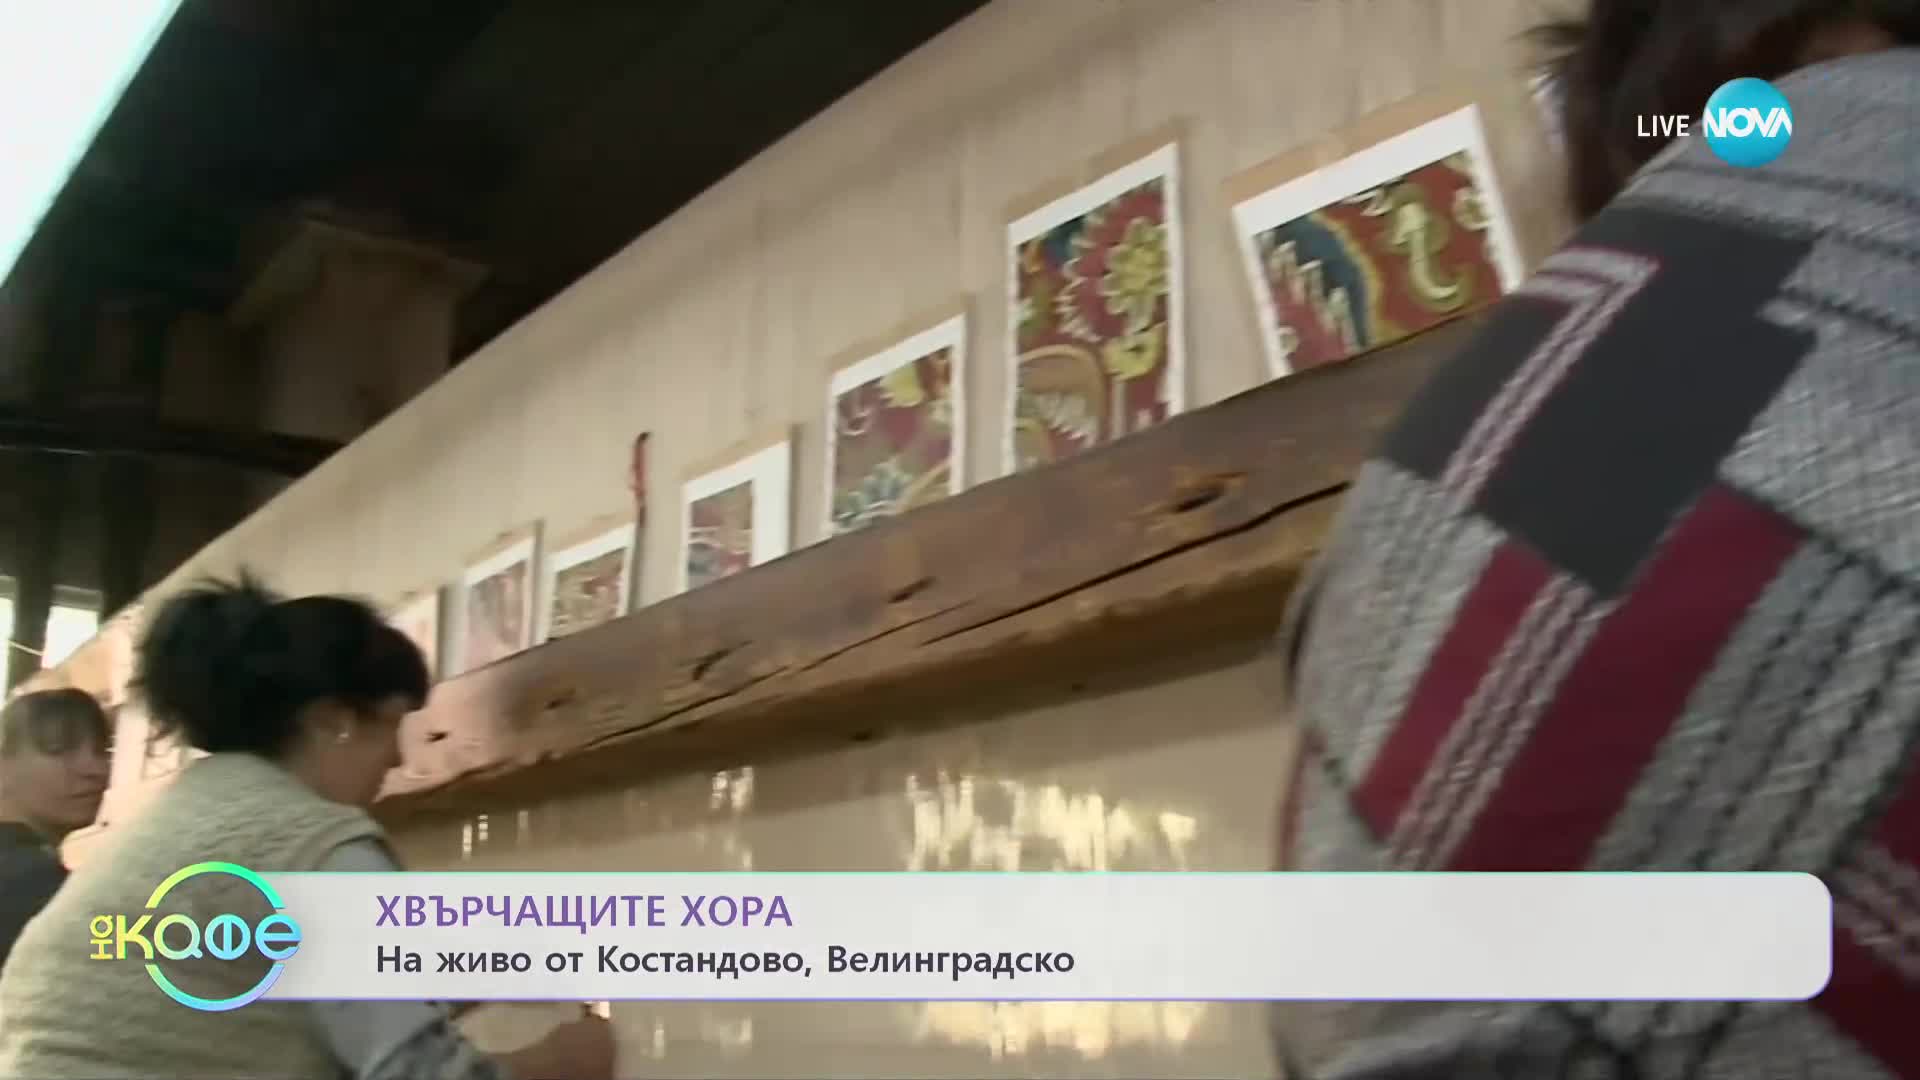 "Хвърчащите хора": Българите, които продават килими на кралското семейство